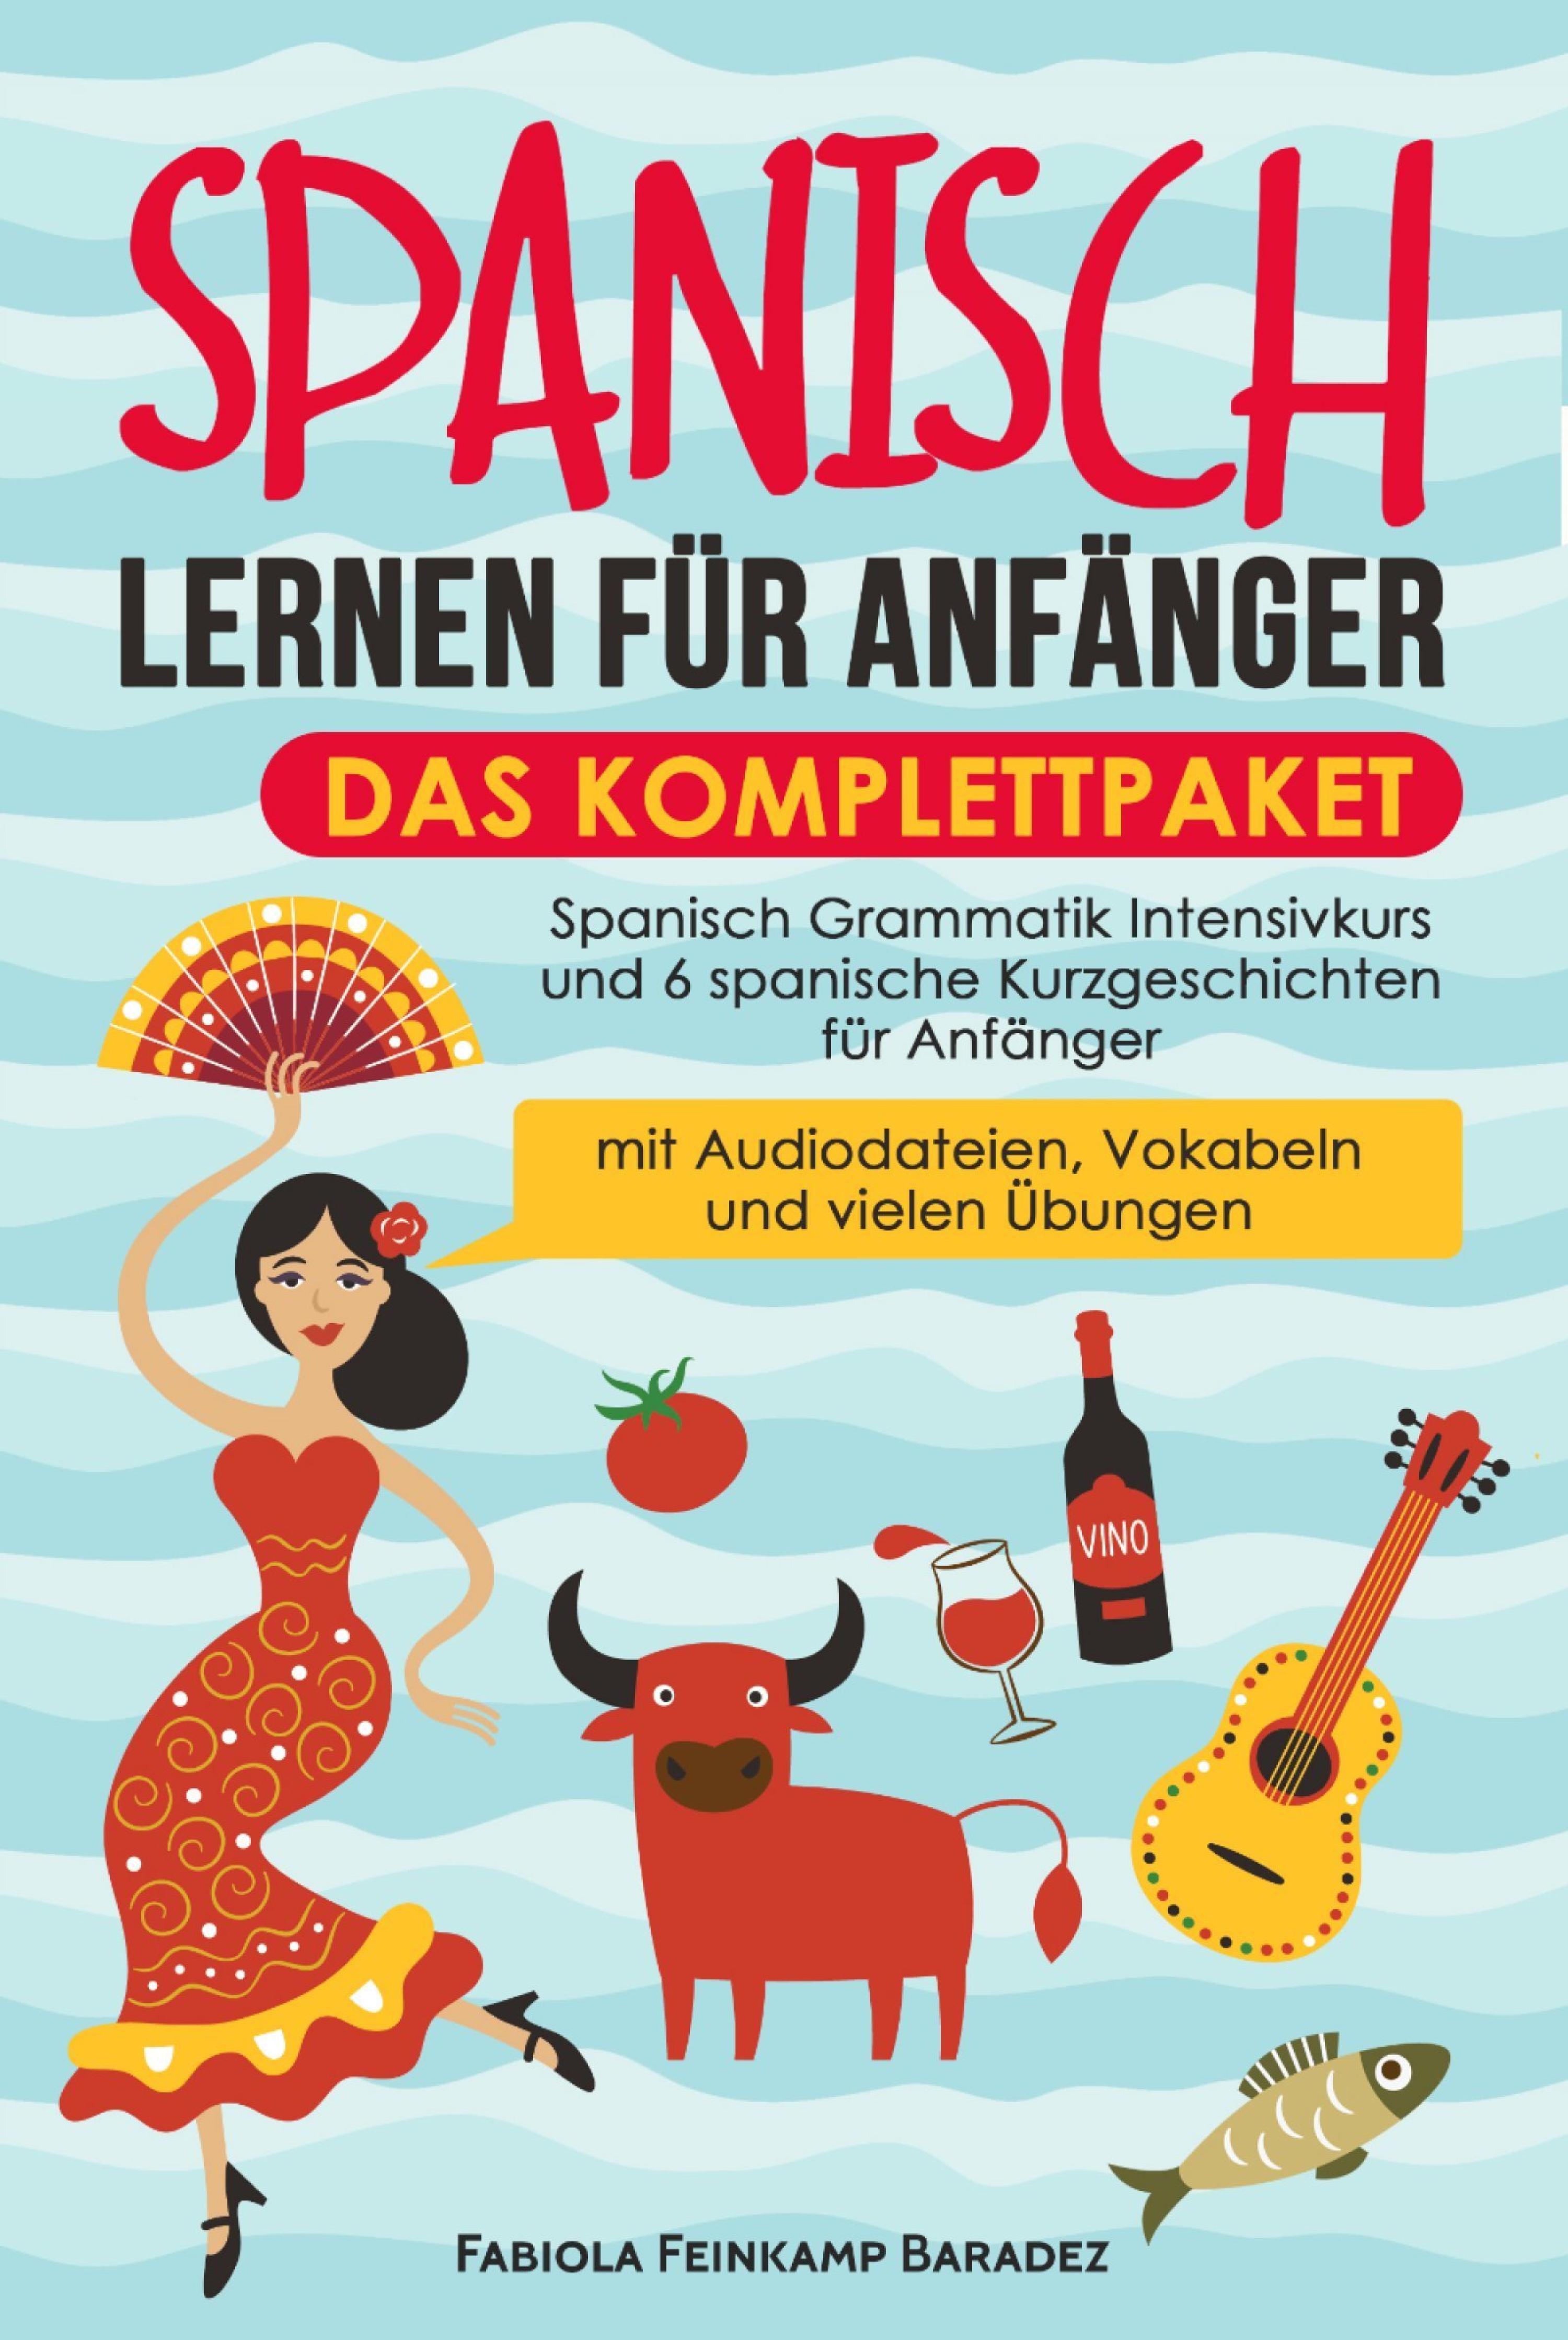 Spanisch lernen für Anfänger – das Komplettpaket